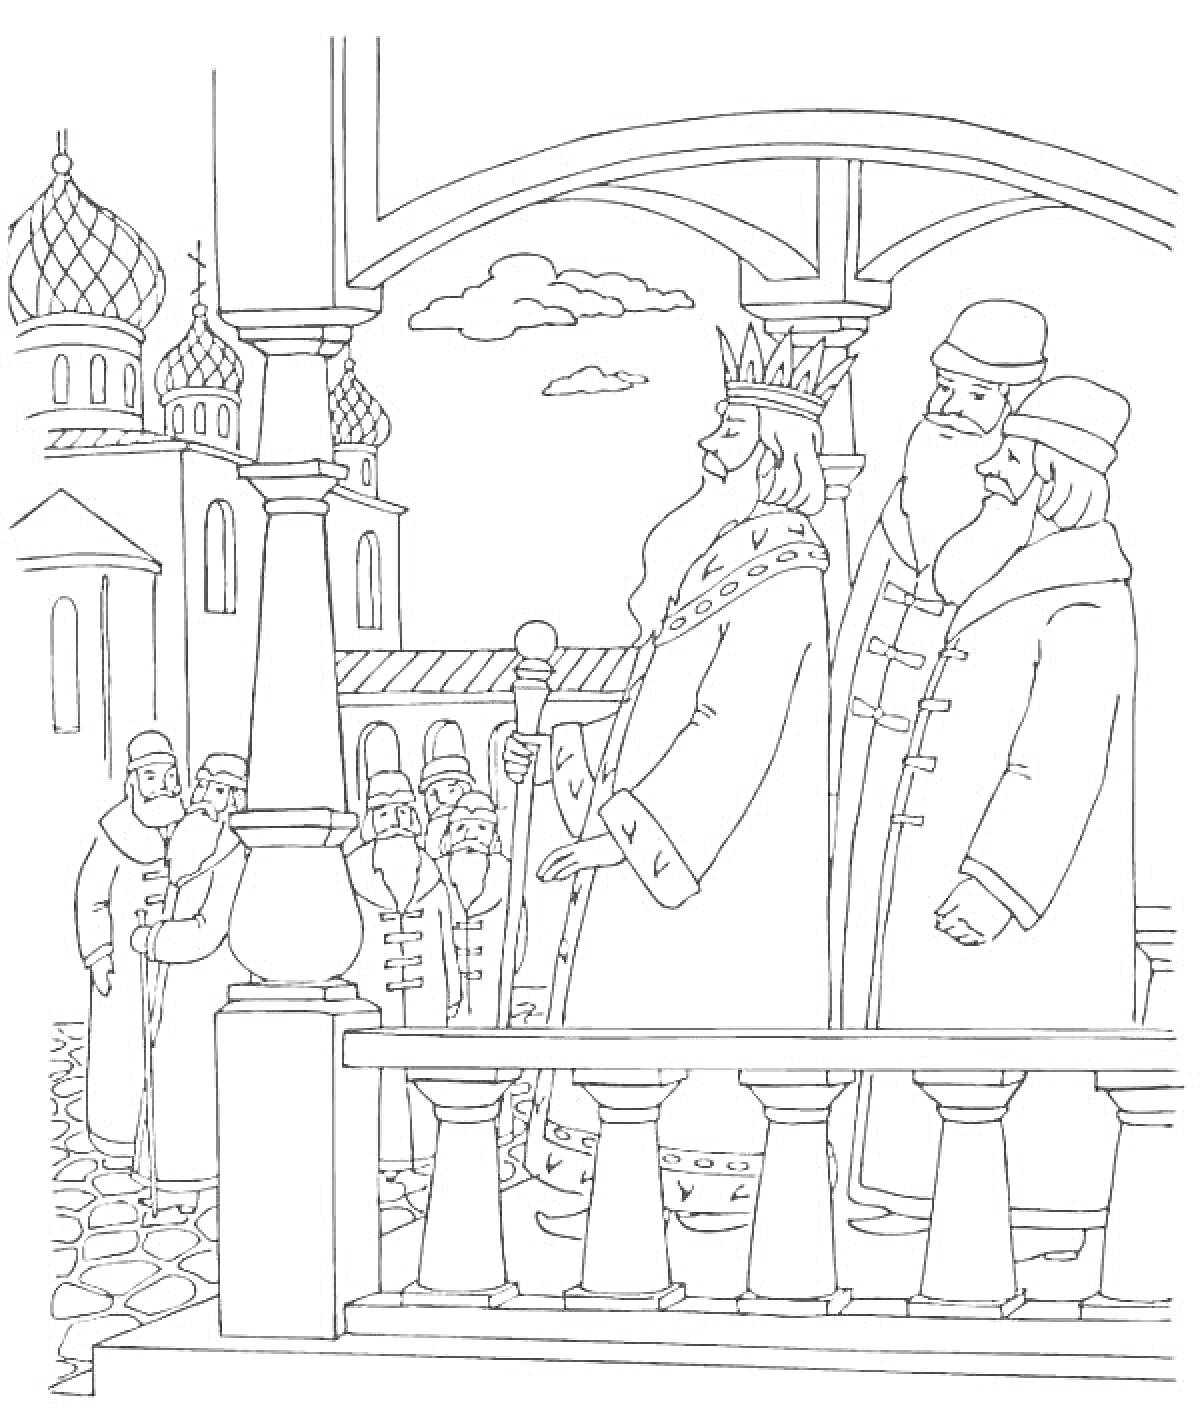 Царь Салтан на крыльце дворца с приближенными, взгляд на второстепенных персонажей вдали, архитектура с куполами в минимализме